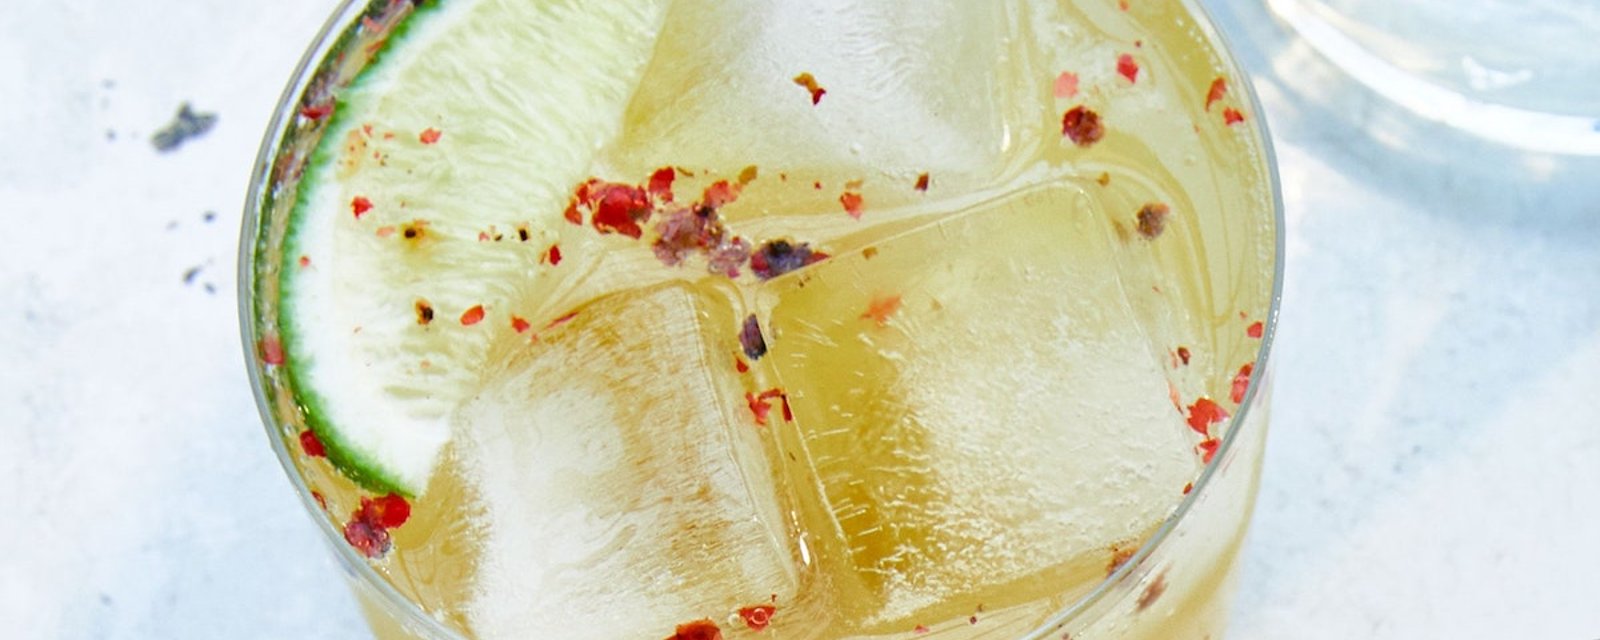 Une boisson qui ajoute du piquant à l’été: le soda chili, lime et ananas